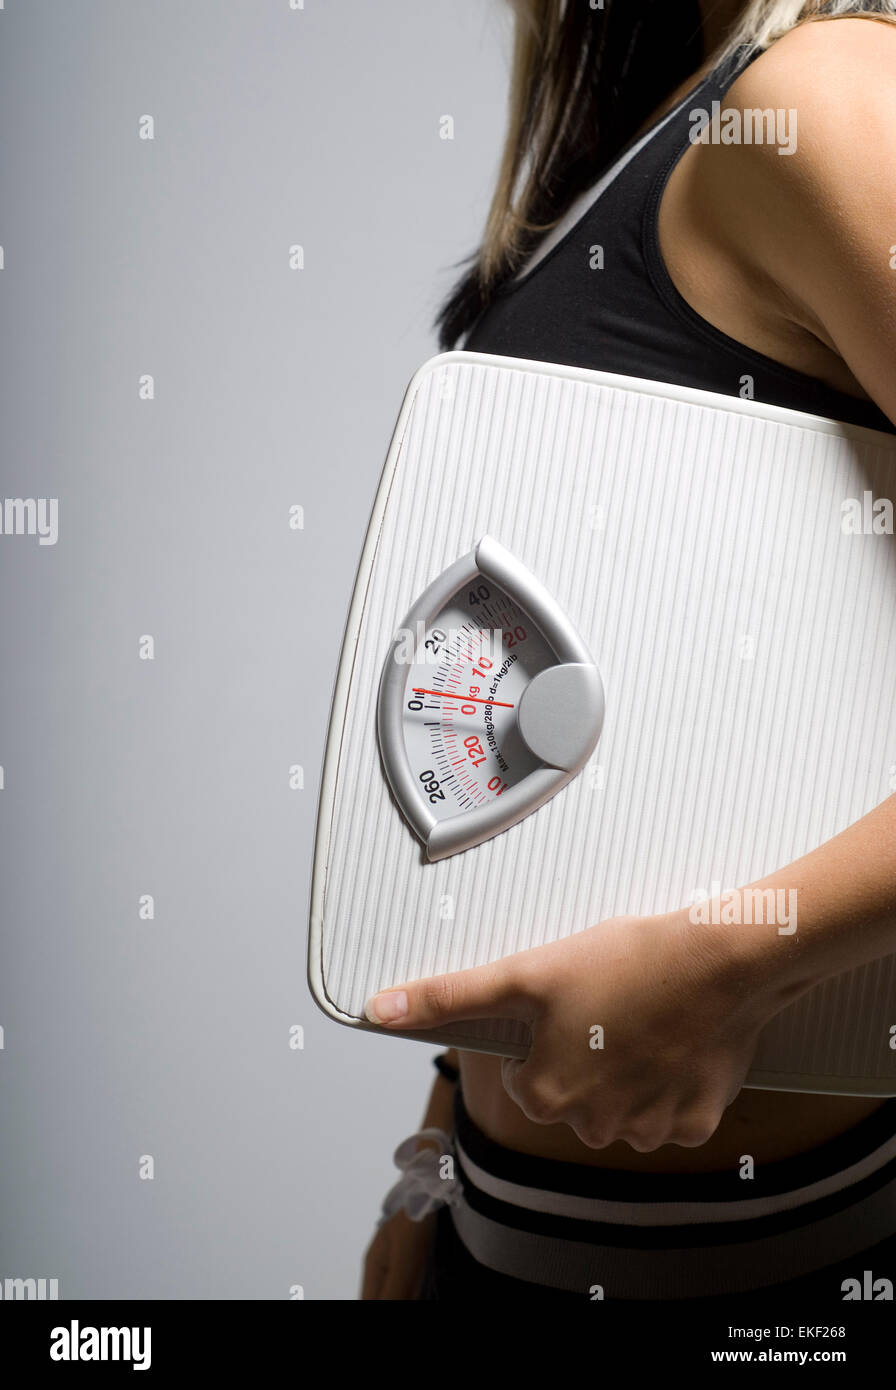 Escala de la dieta y de la mujer de forma vertical Foto de stock